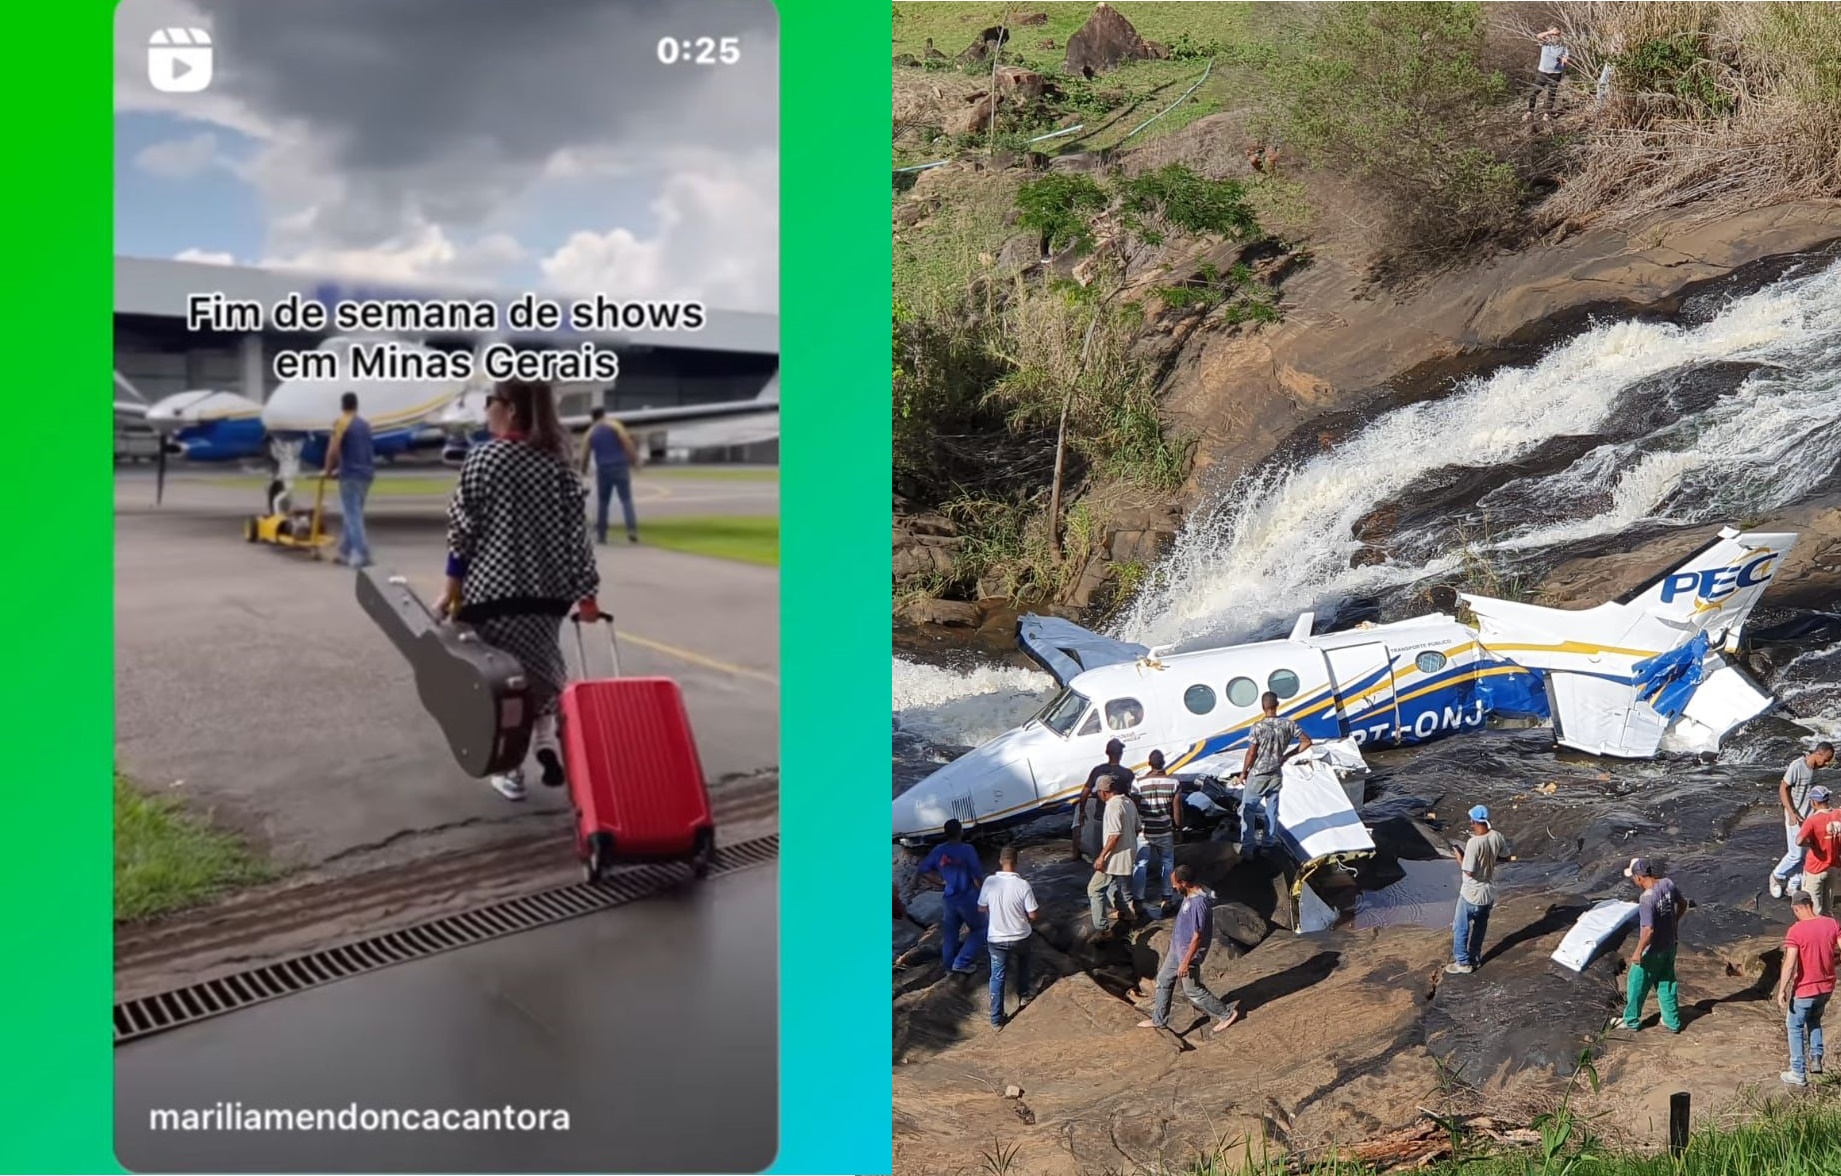 ACIDENTE: Avião cai com a cantora Marília Mendonça; todos os ocupantes morrem